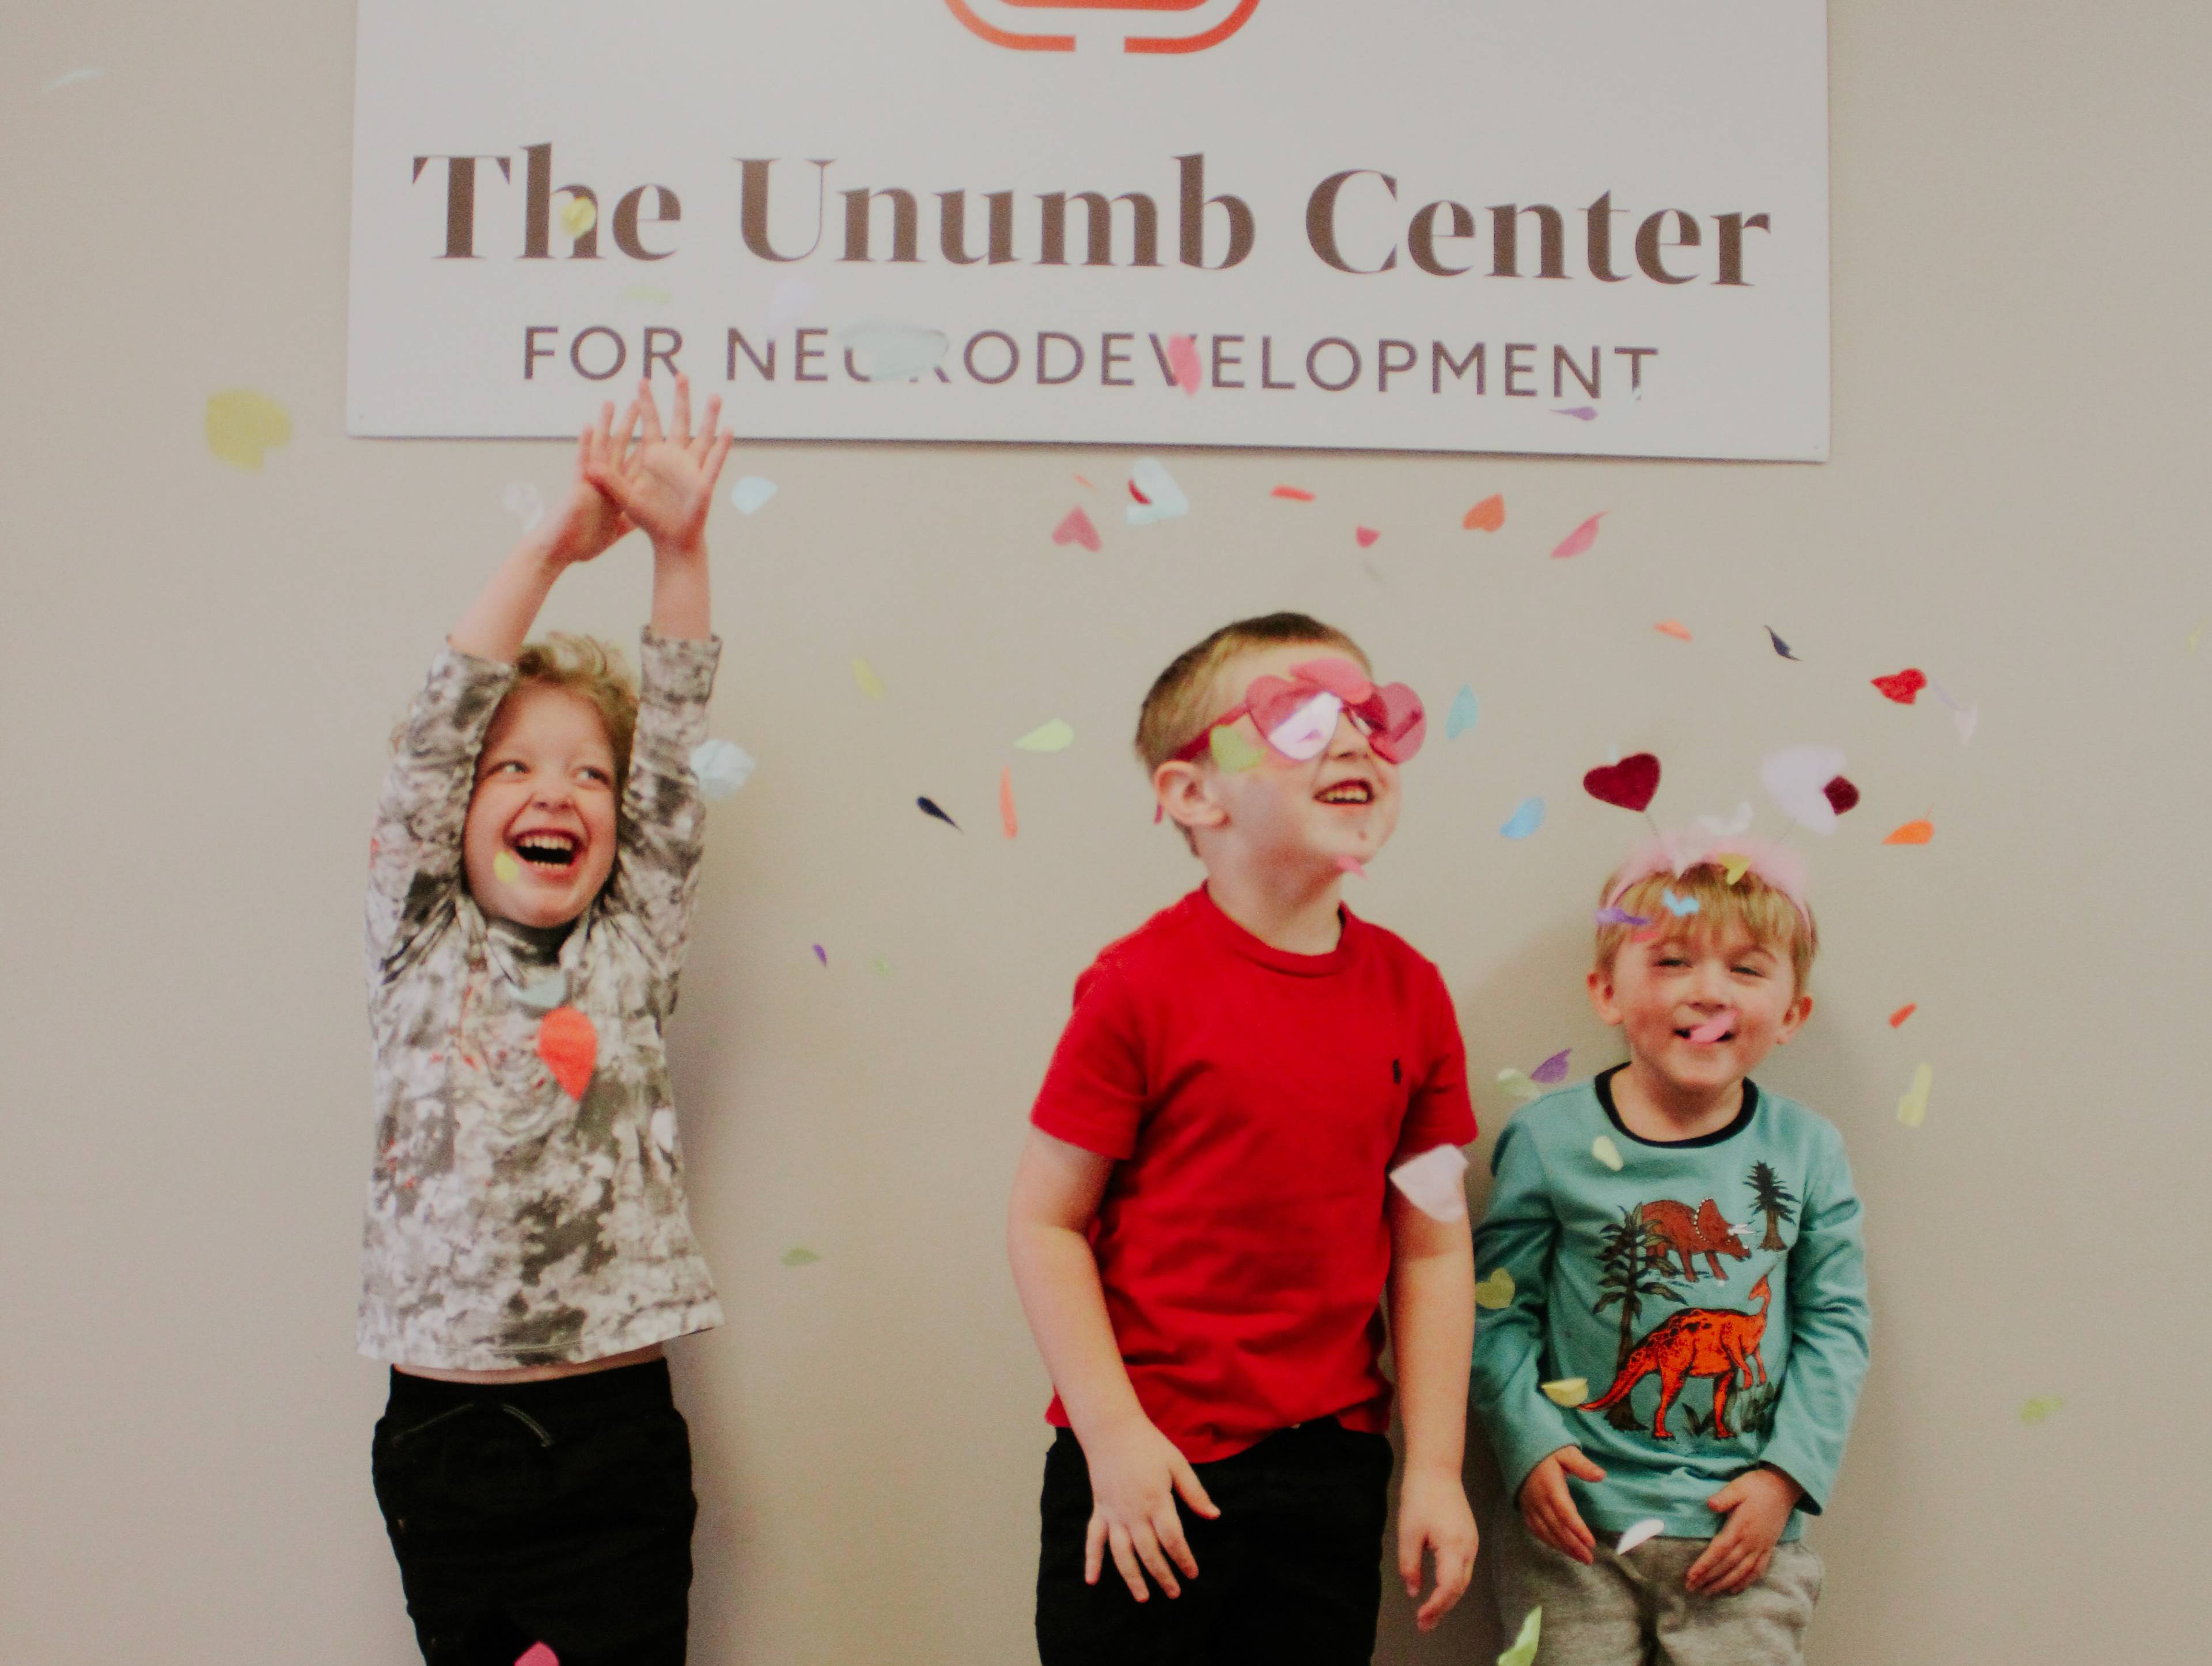 The Unumb Center For Neurodevelopment